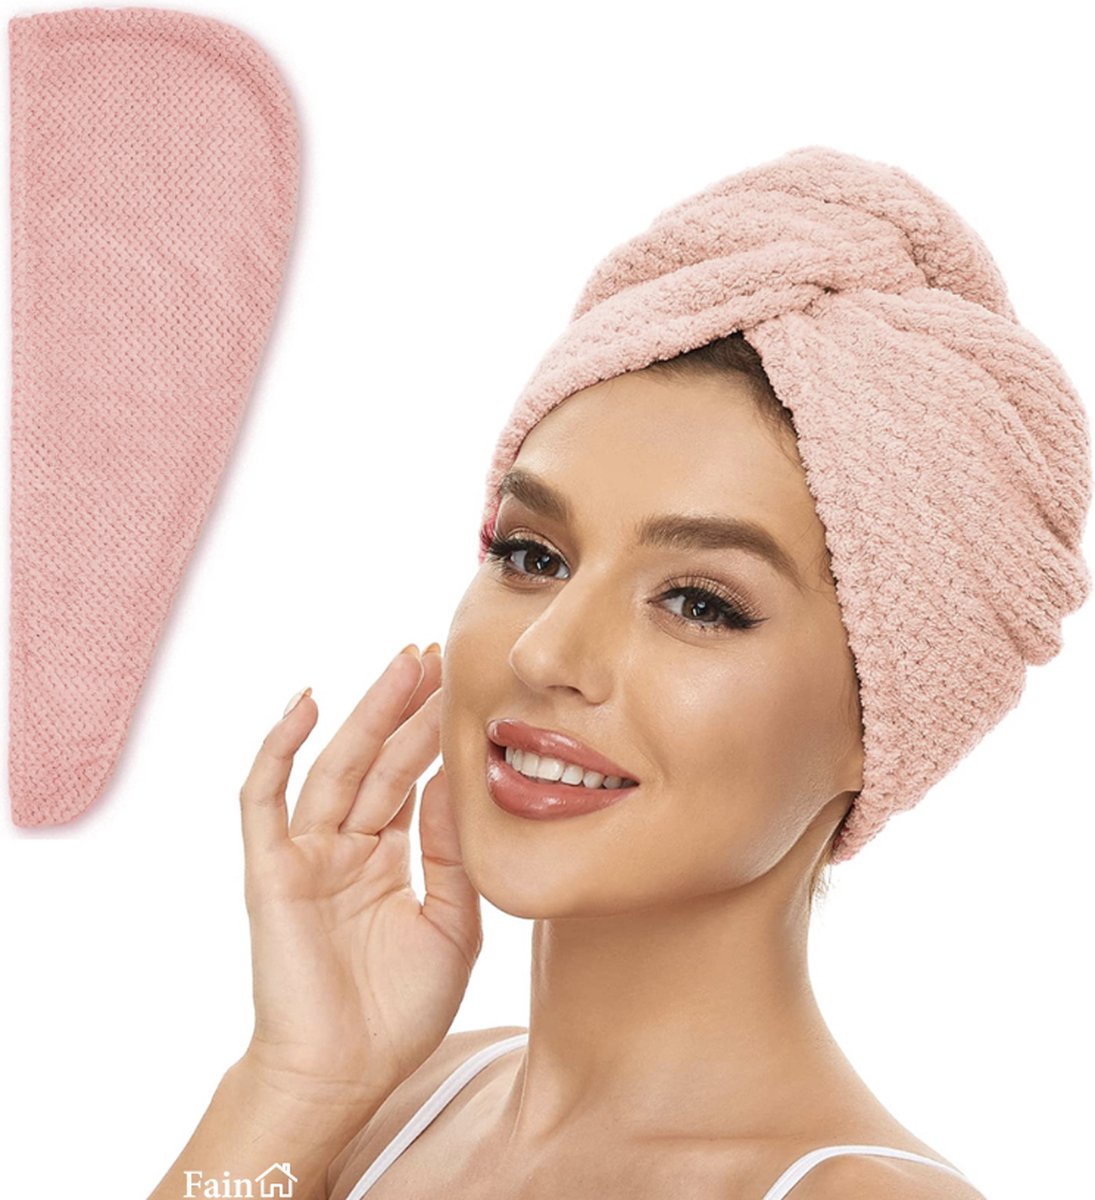 Fain® - Premium haarhanddoek – Hair towel – Licht roze – Voor alle haartypes - Haarhanddoek microvezel - Hoofdhanddoek – Haartulband – Haarhanddoek badstof – Haarhanddoek kinderen – Haarhanddoek sneldrogend